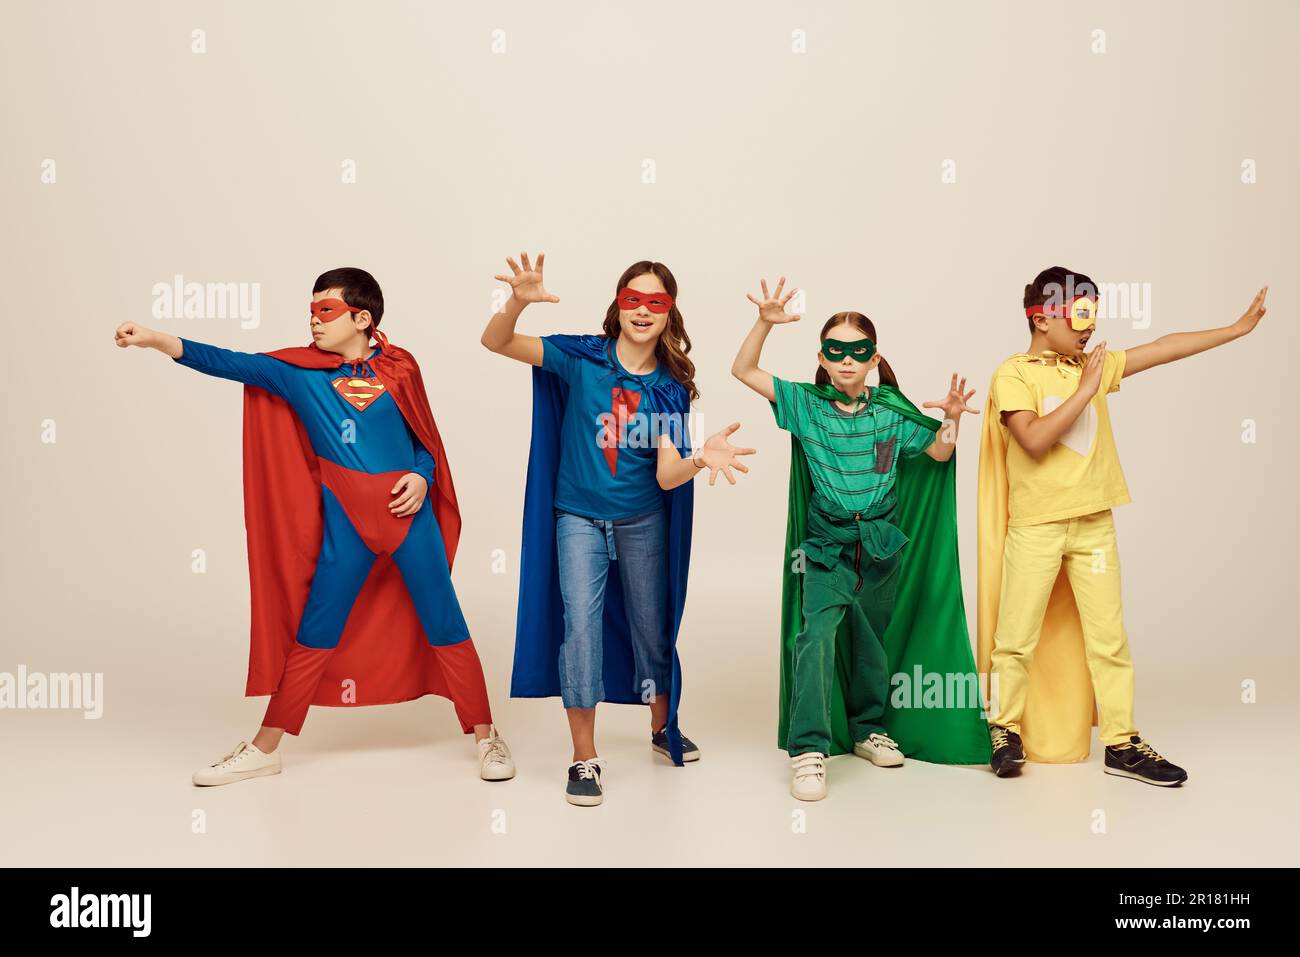 Multikulturelle Kinder in farbenfrohen Superheldenkostümen mit Umhängen und Gesten zusammen auf grauem Hintergrund im Studio, International Children's d Stockfoto